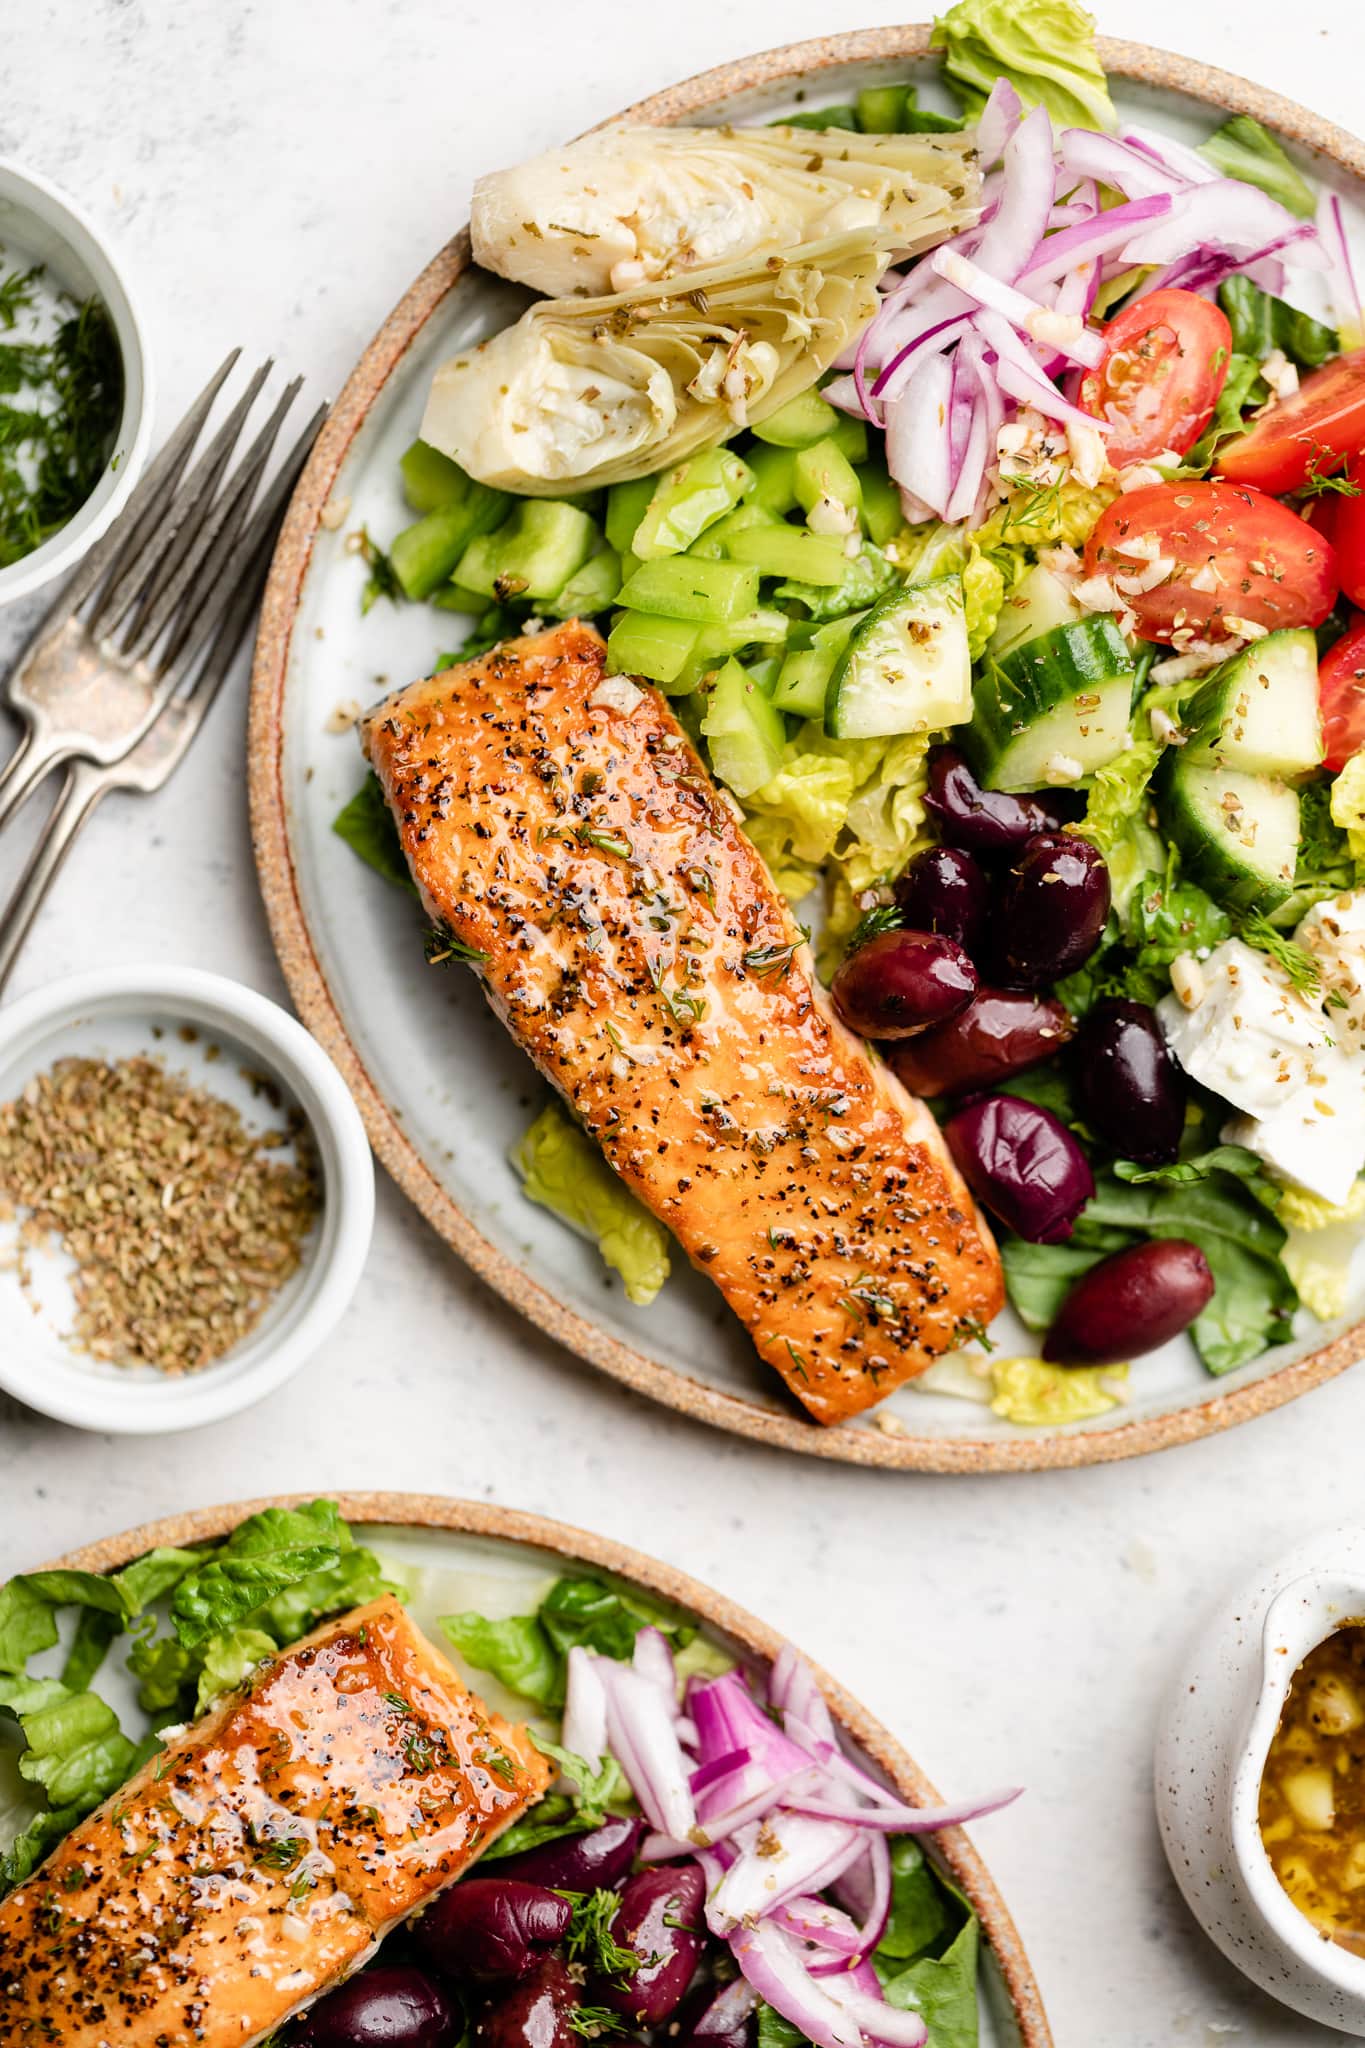 Greek salmon salad on plate